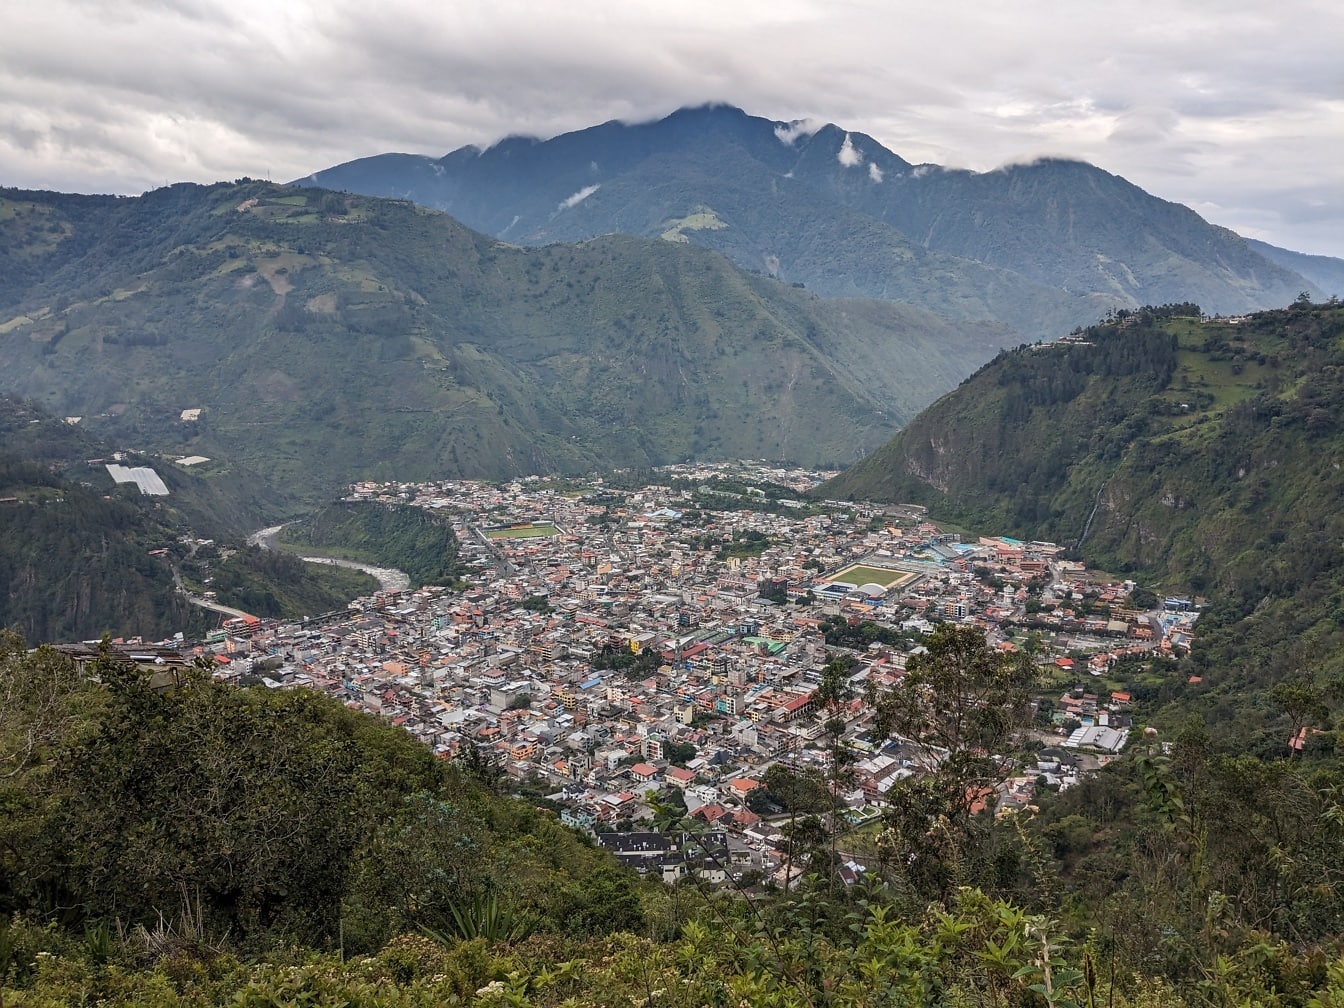 Panorama da cidade de Banos de Aqua Santa no Equador em um vale com montanhas ao fundo